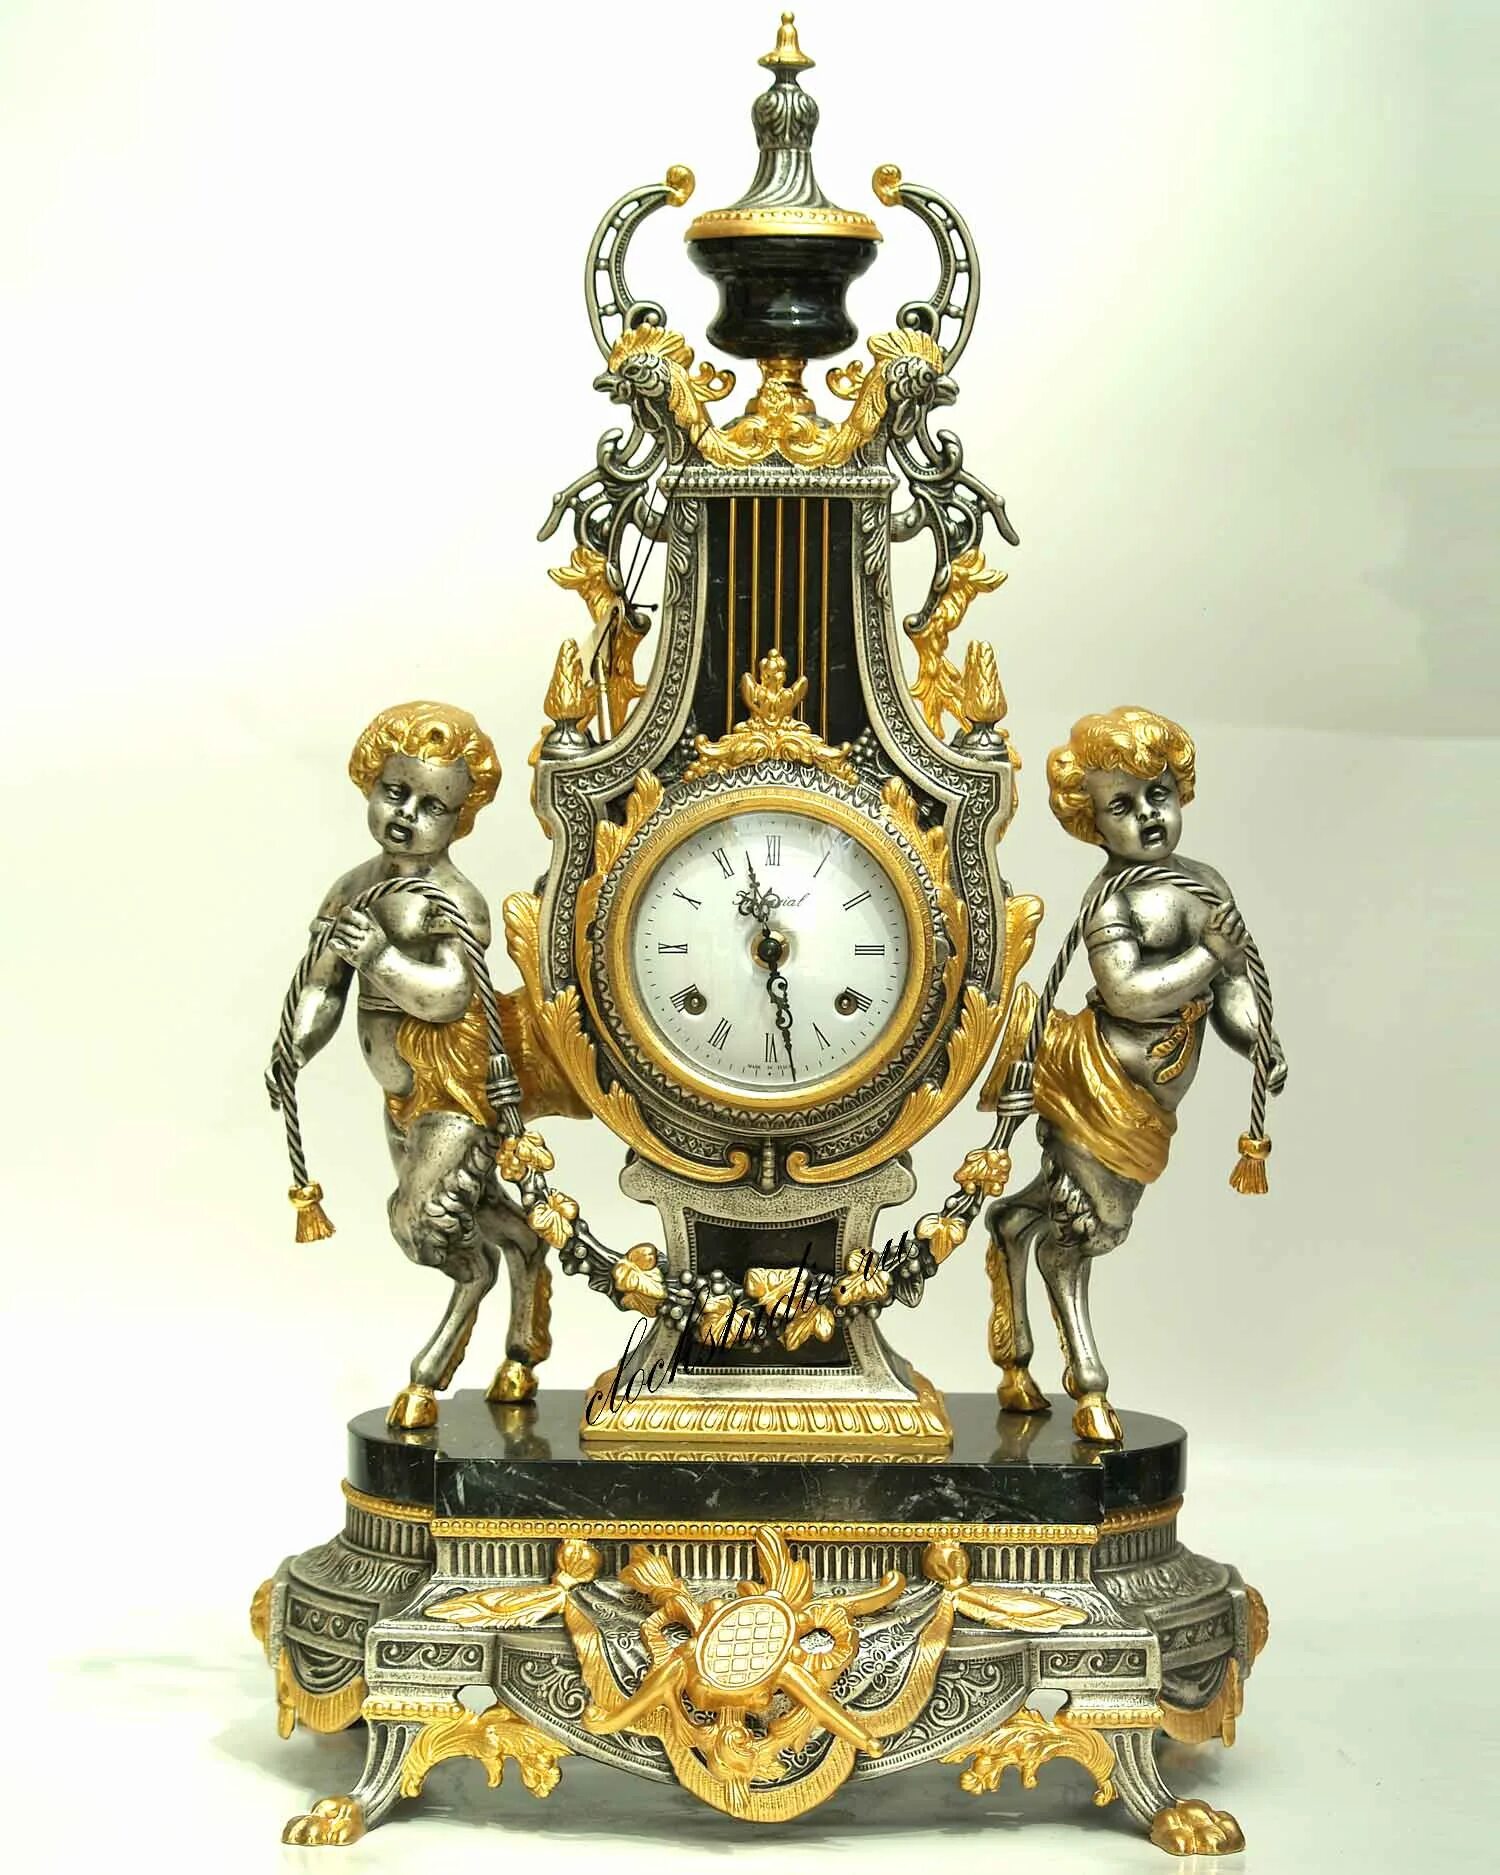 Время в италии часов. Часы каминные Farbel Imperial. Каминные часы Farbel Imperial Италия. Farbel Imperial часы Italy. Часы каминные rue Amelot 26.